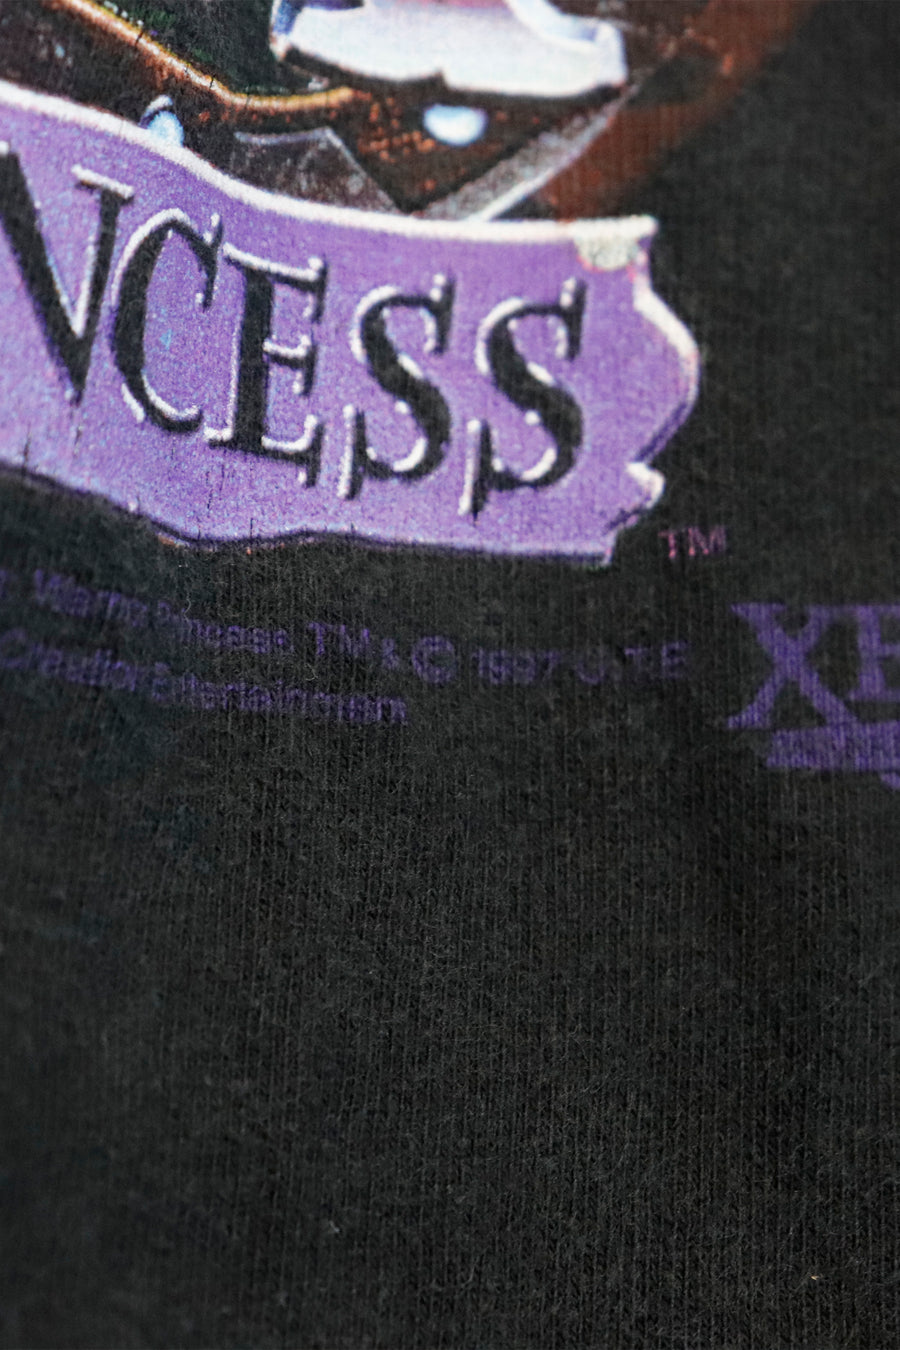 Vintage Xena Warrior Princess T Shirt Sz XL